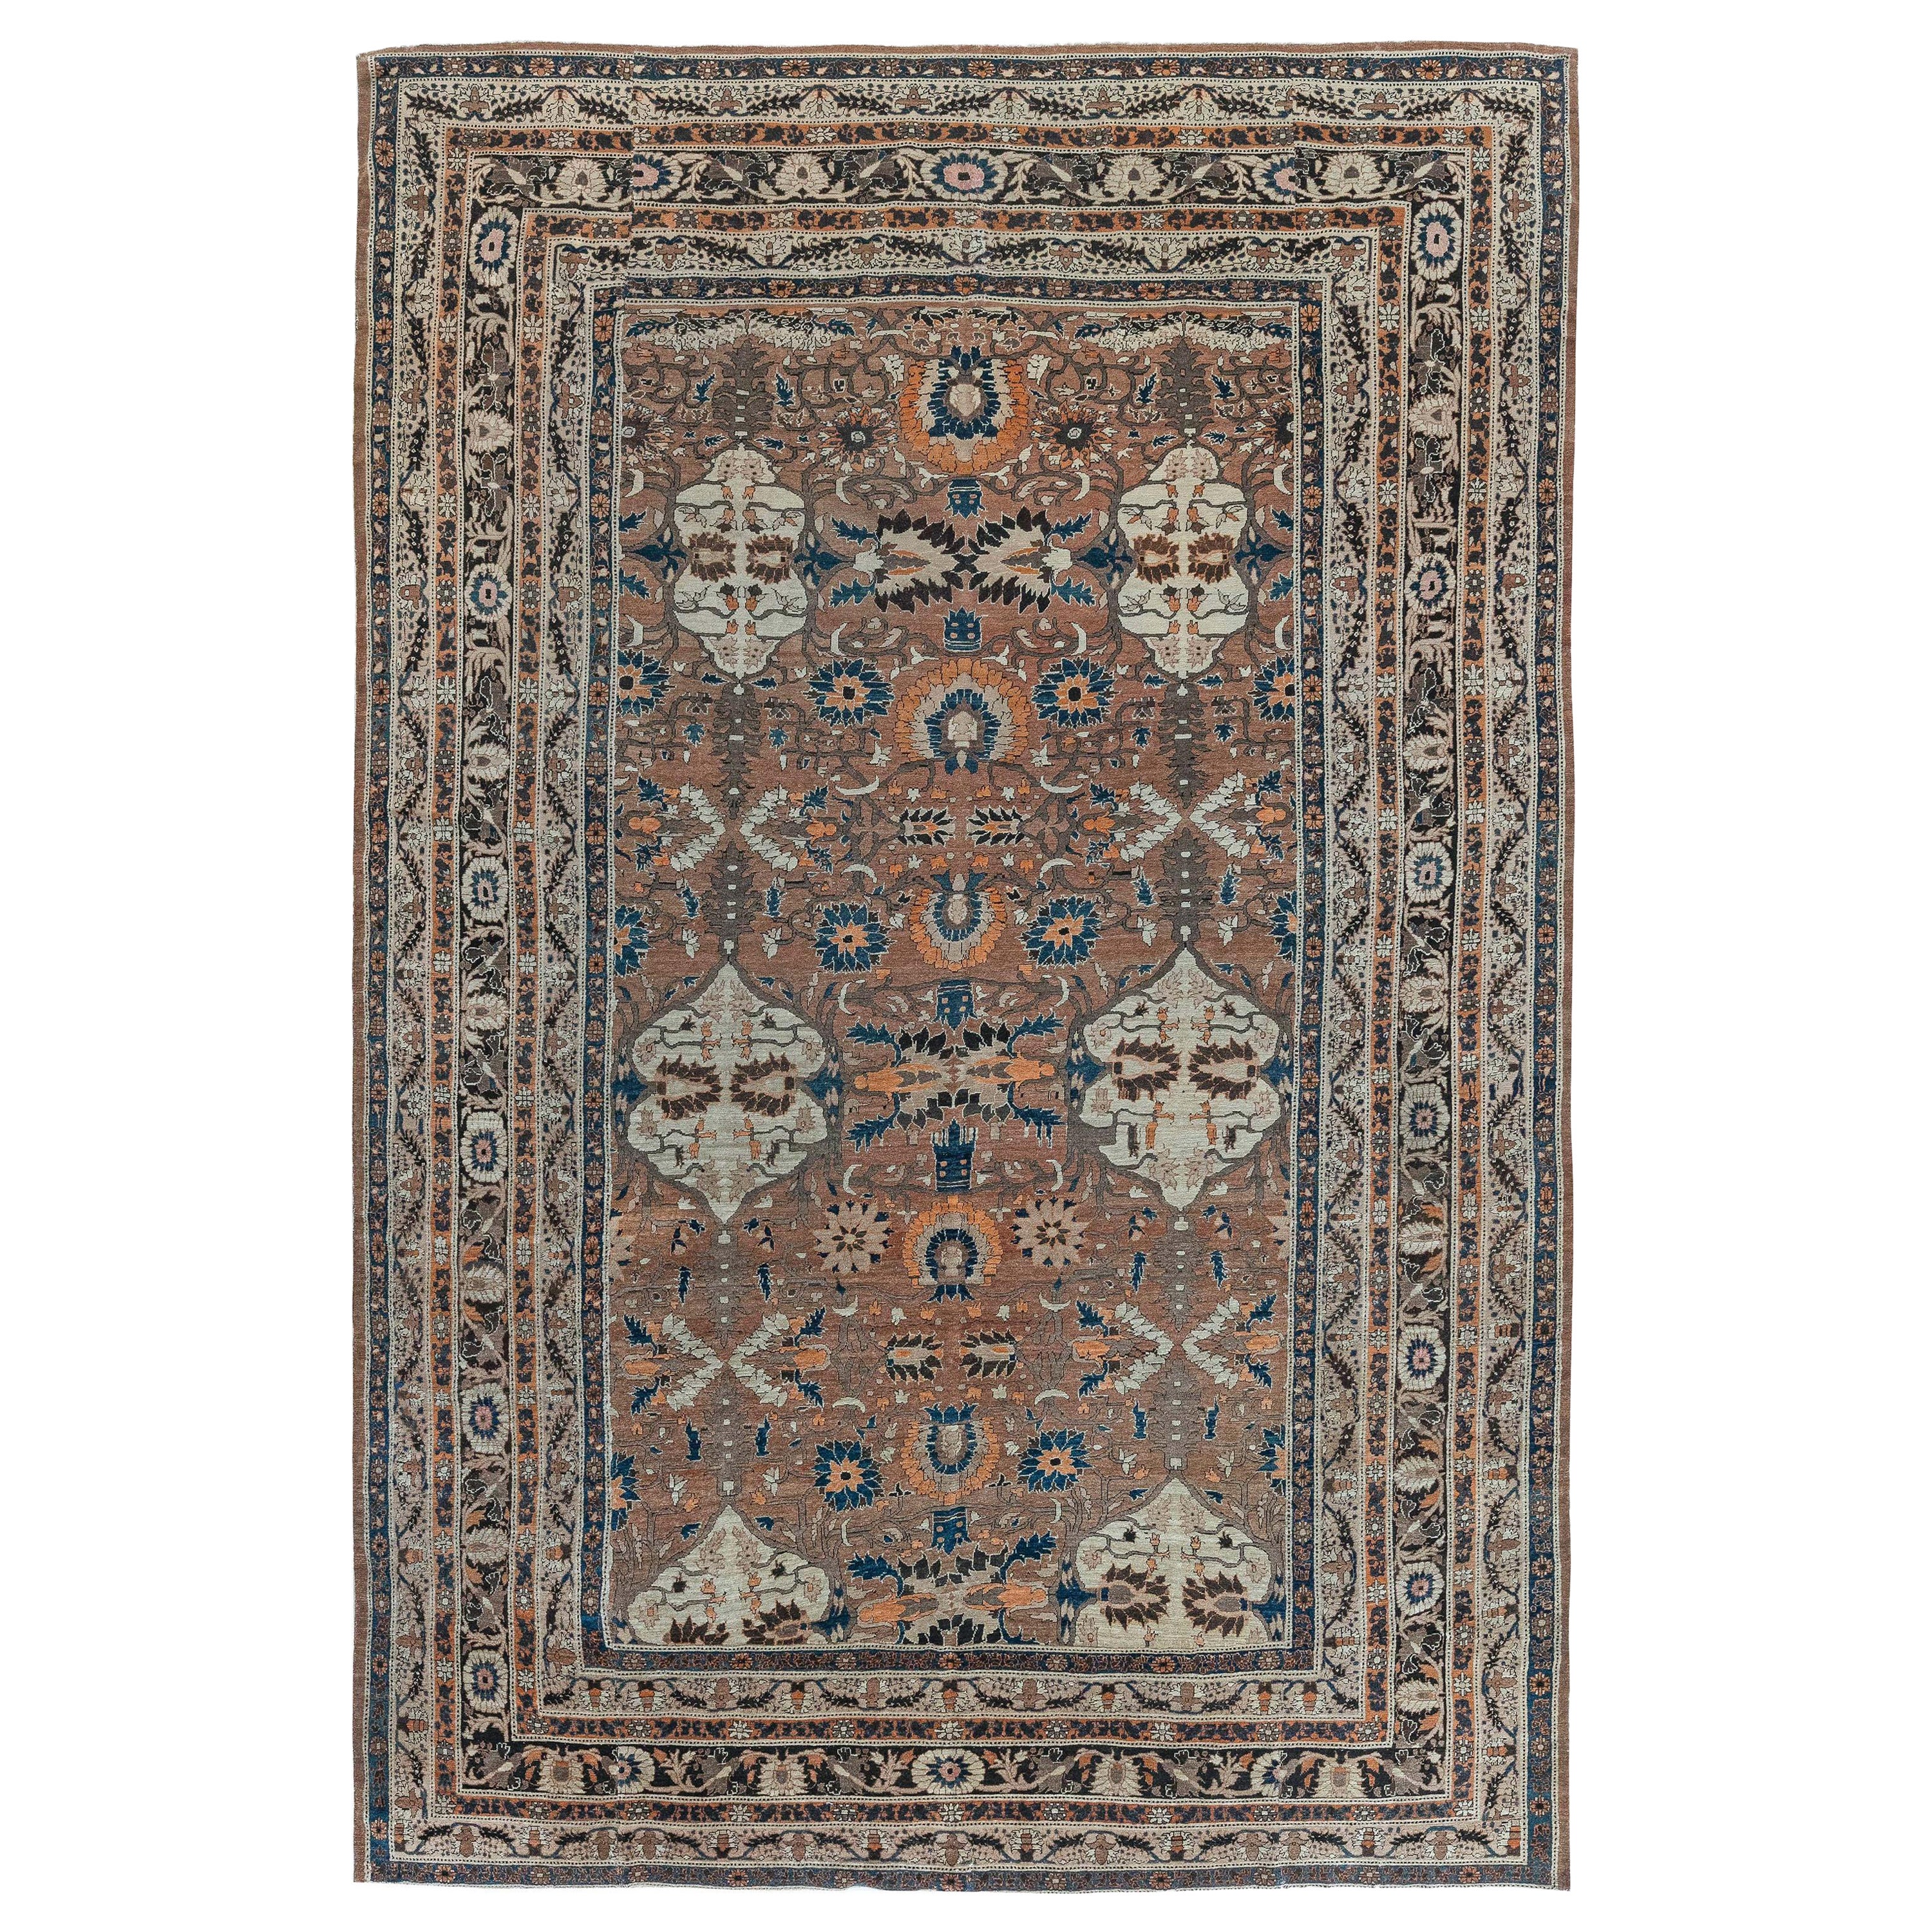 Antique Persian Tabriz Handmade Rug Size Adjusted For Sale